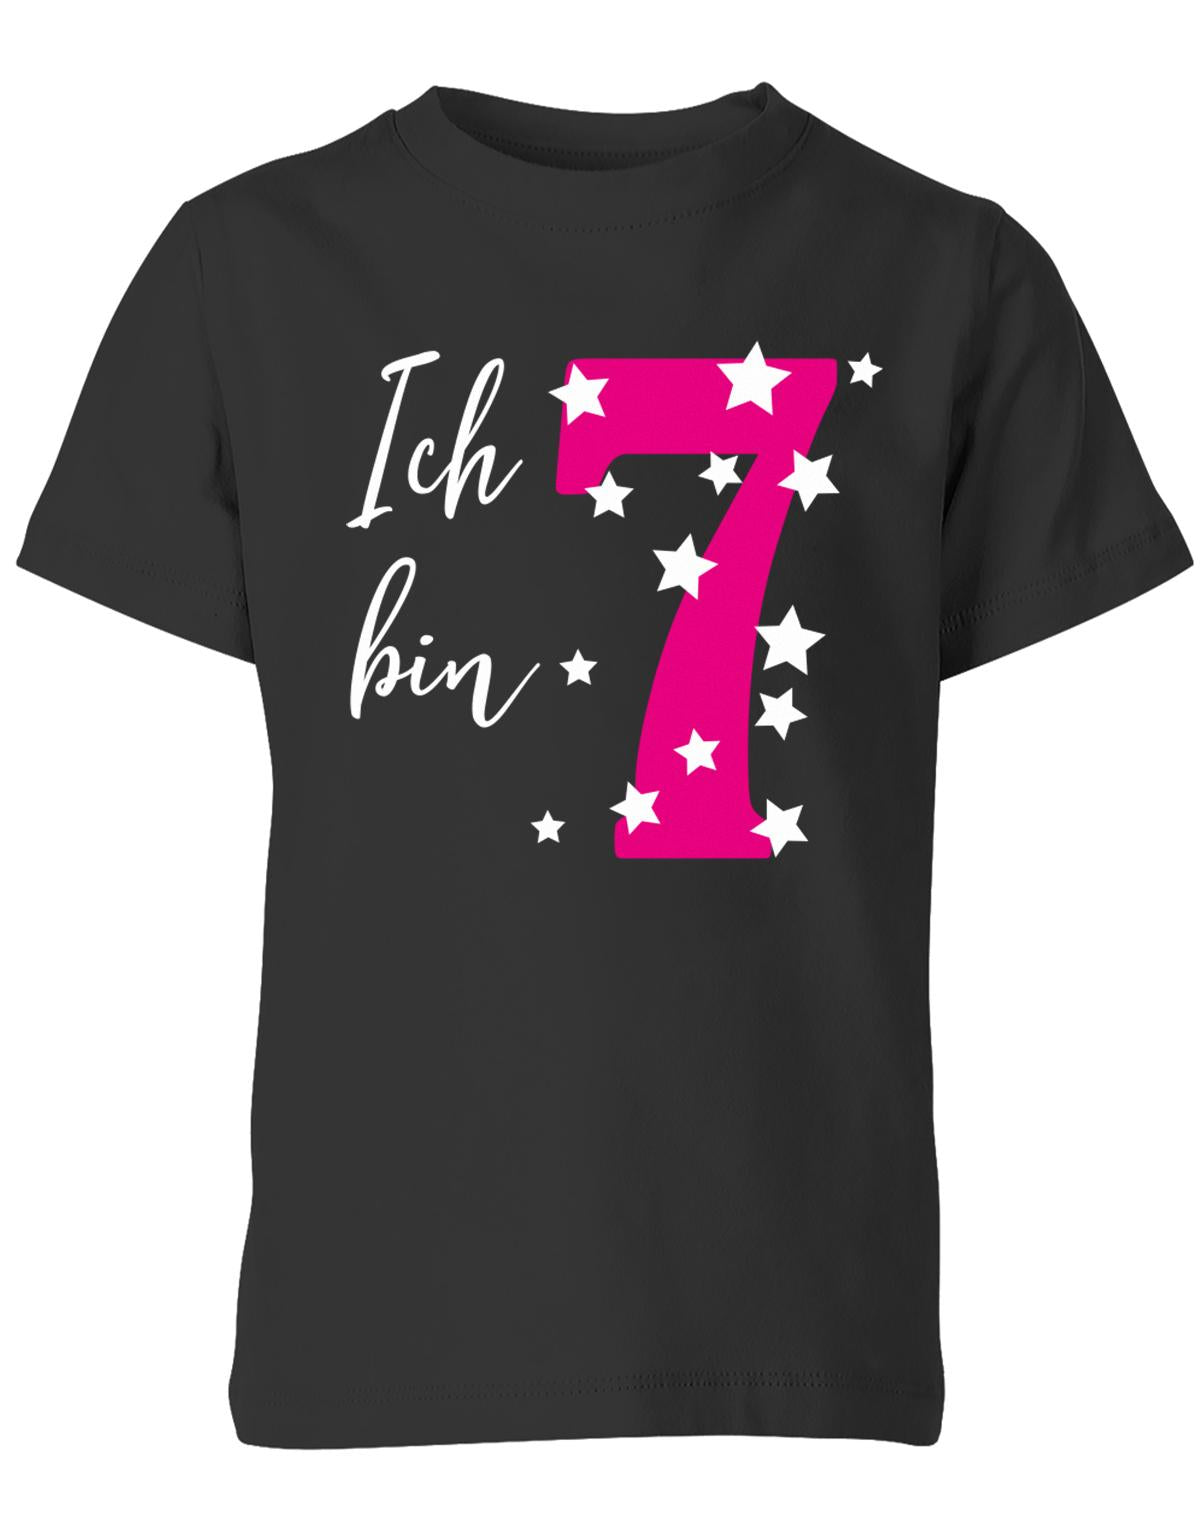 ich-bin-7-sterne-sternchen-geburtstag-kinder-shirt-schwarz